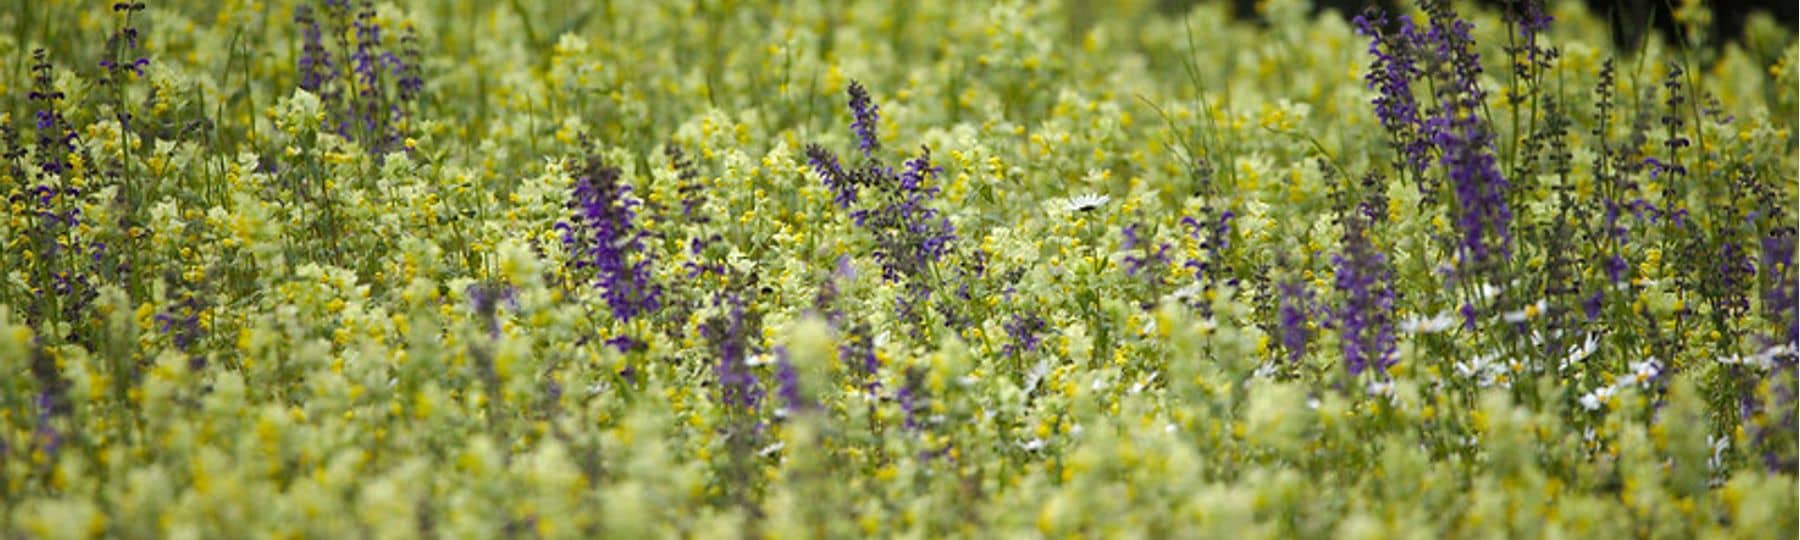 Photo d'une prairie fleurie avec des fleurs jaunes et des fleurs mauves